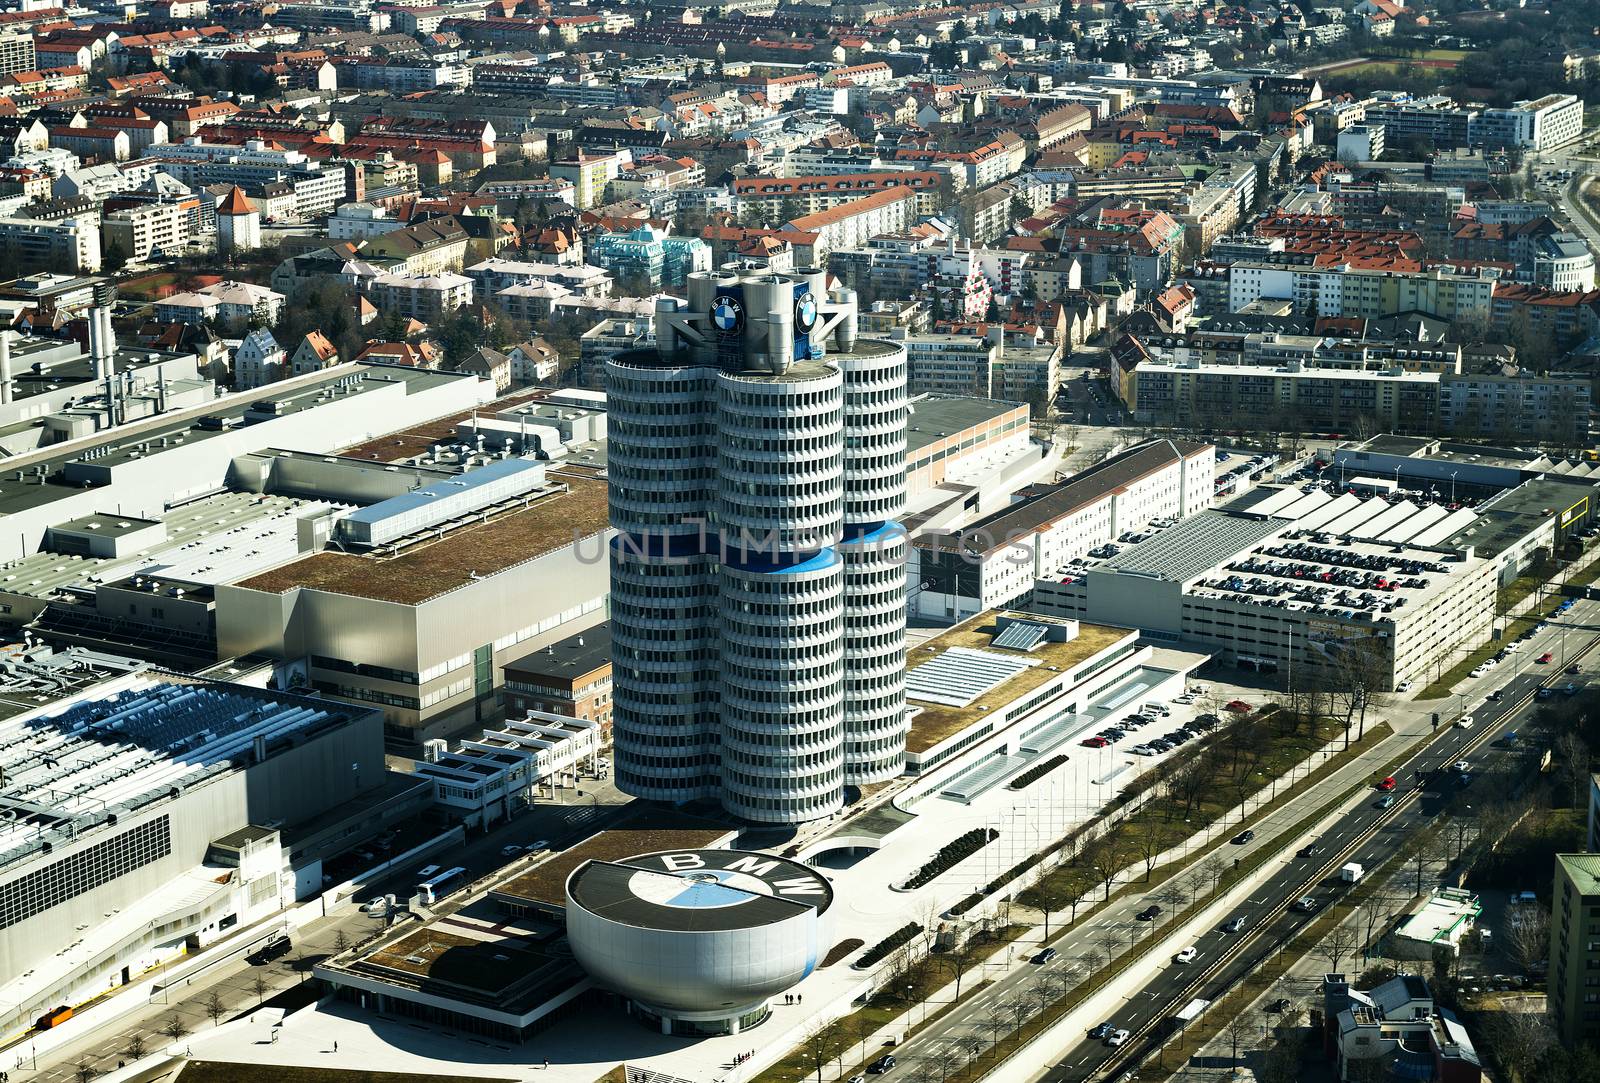 BMW Headquarter in Munchen by ventdusud